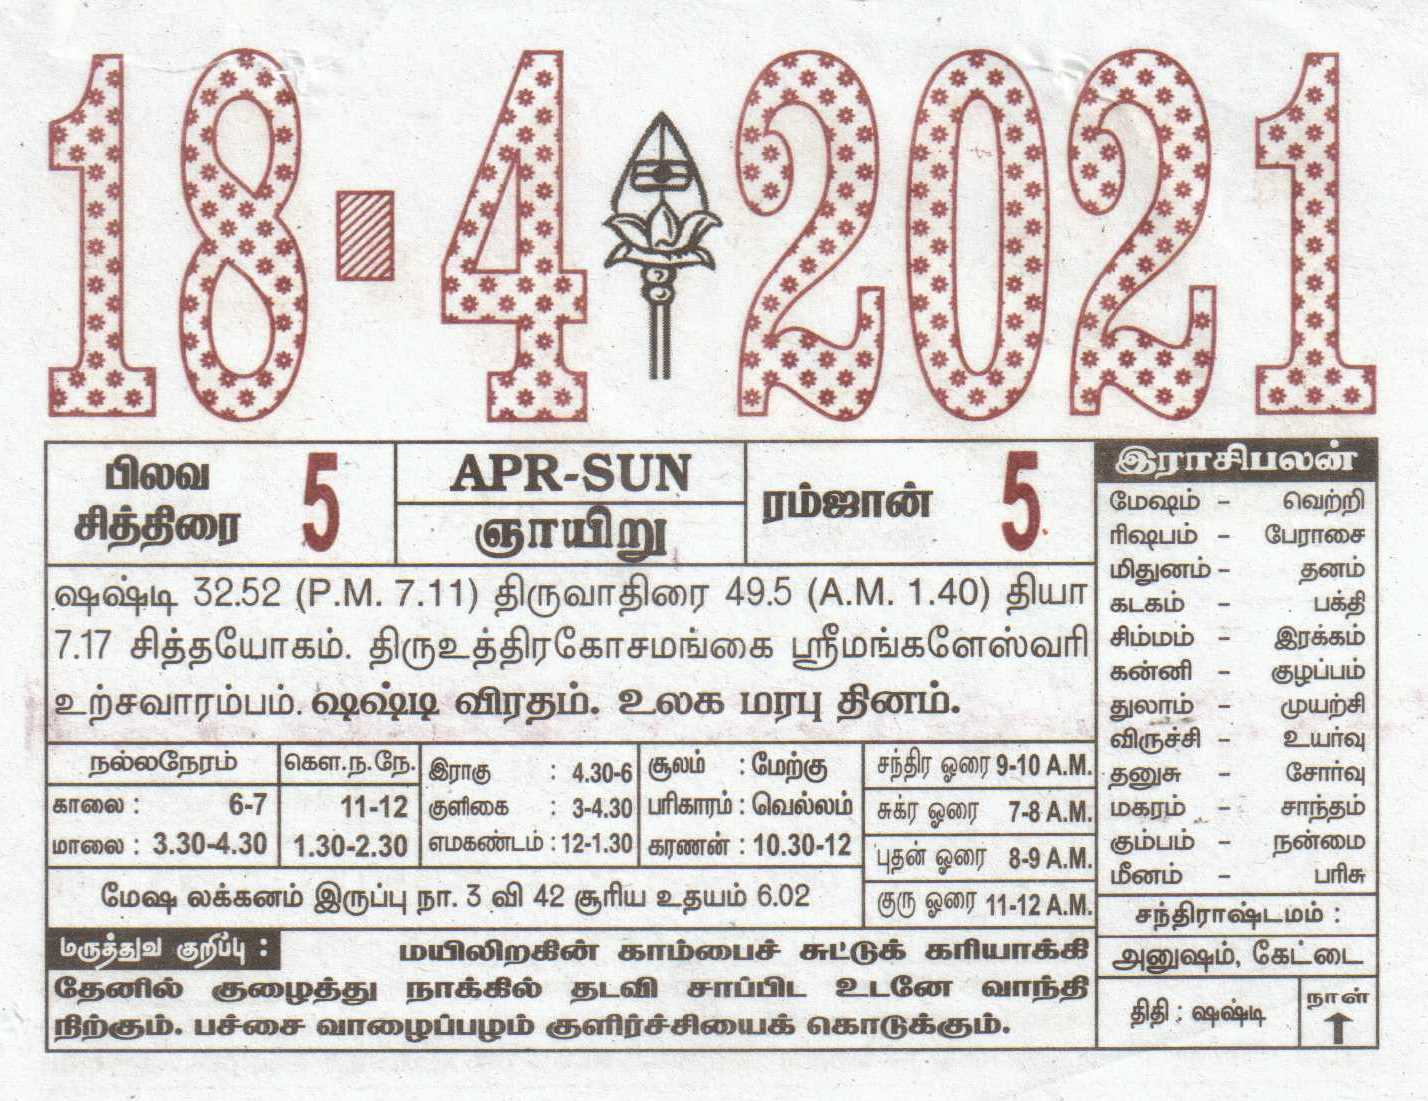 18-04-2021 Daily Calendar | Date 18 , January Daily Tear December 7 2021 Tamil Calendar